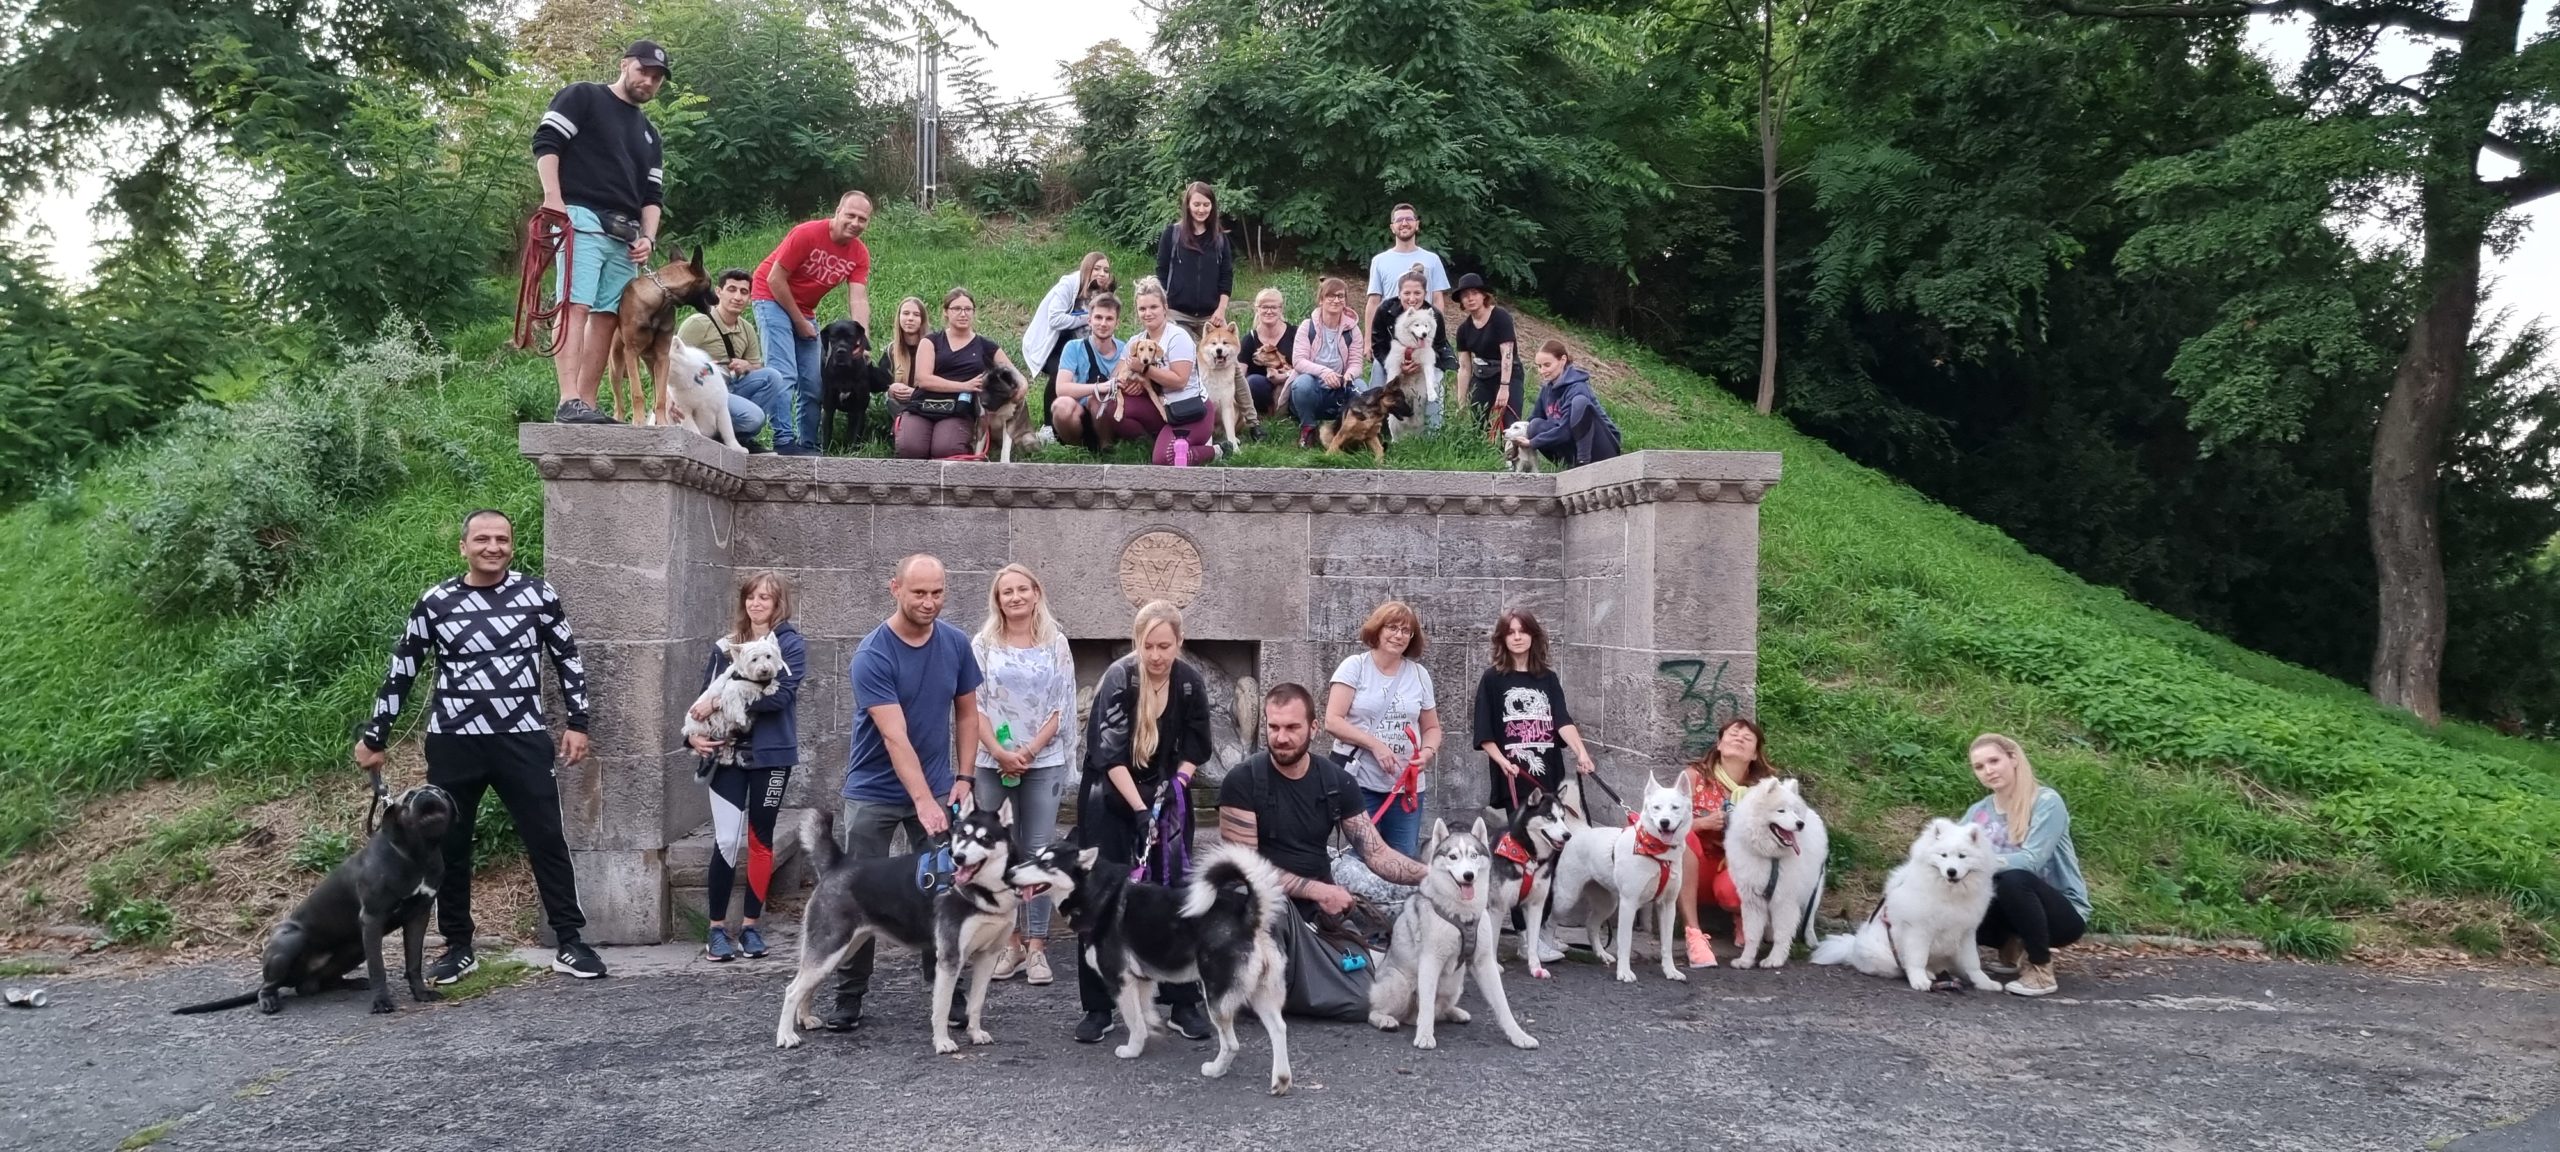 Psie socjalizacje – skąd we Wrocławiu spacery behawioralne?   …